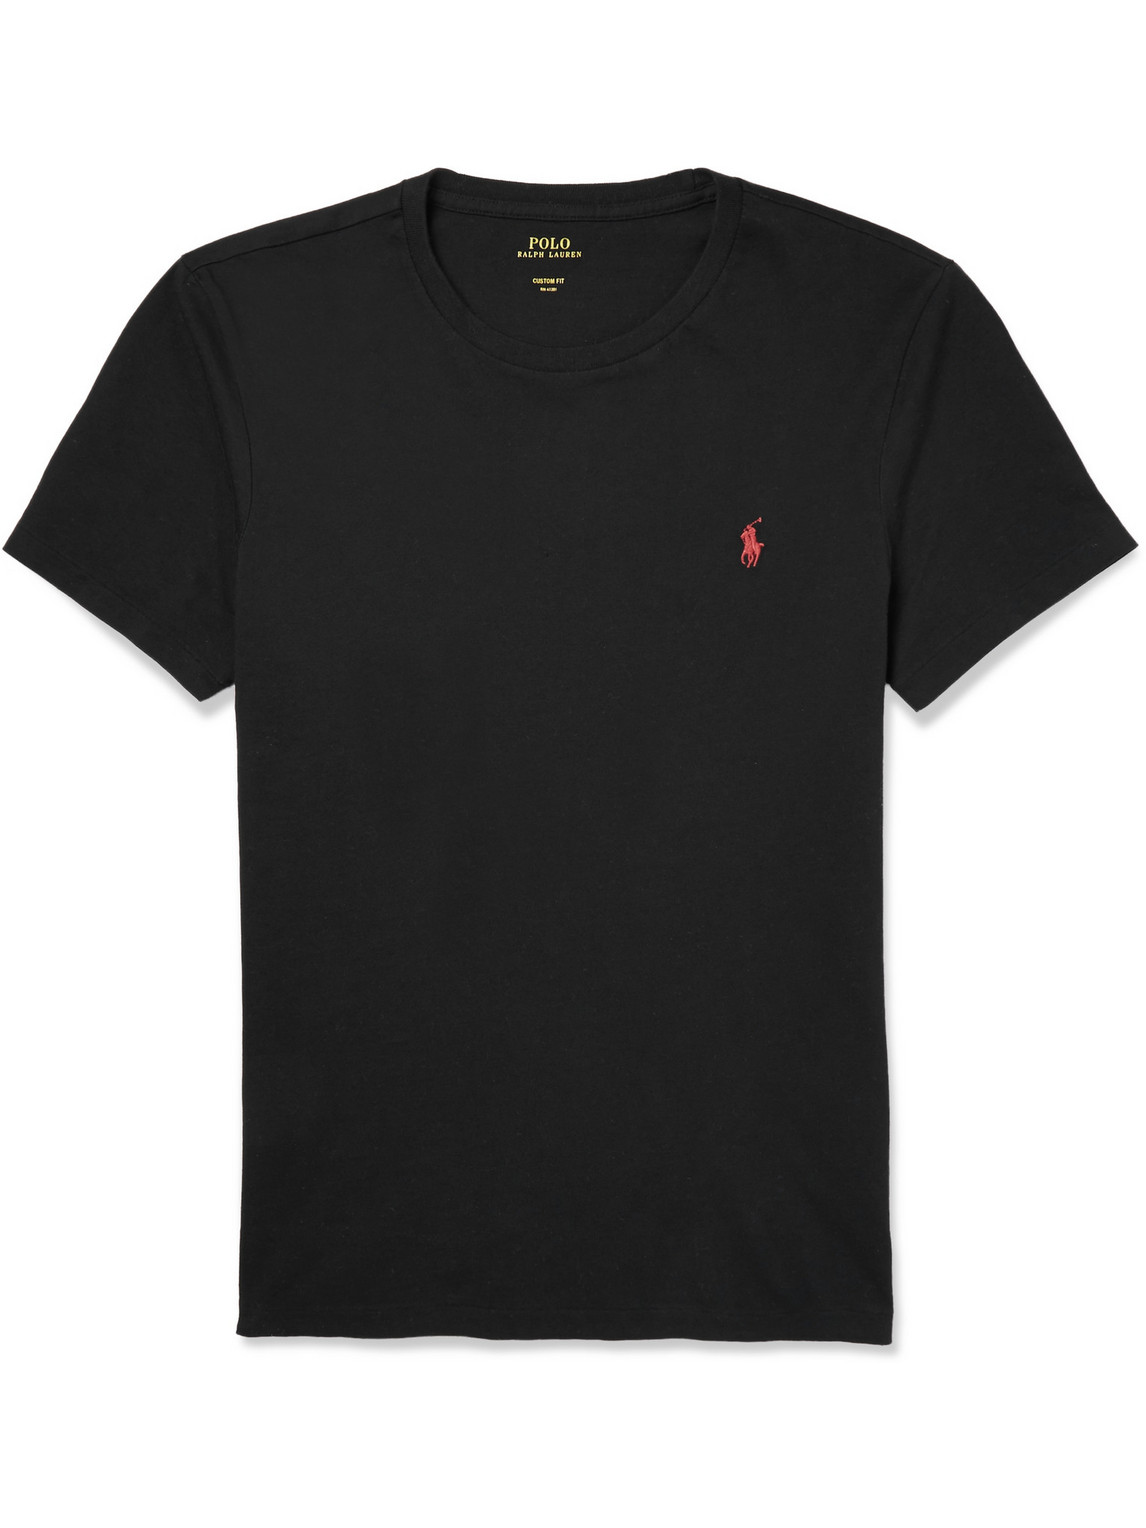 Polo Ralph Lauren - Slim-Fit Cotton T-Shirt - Men - Black - XS for Men